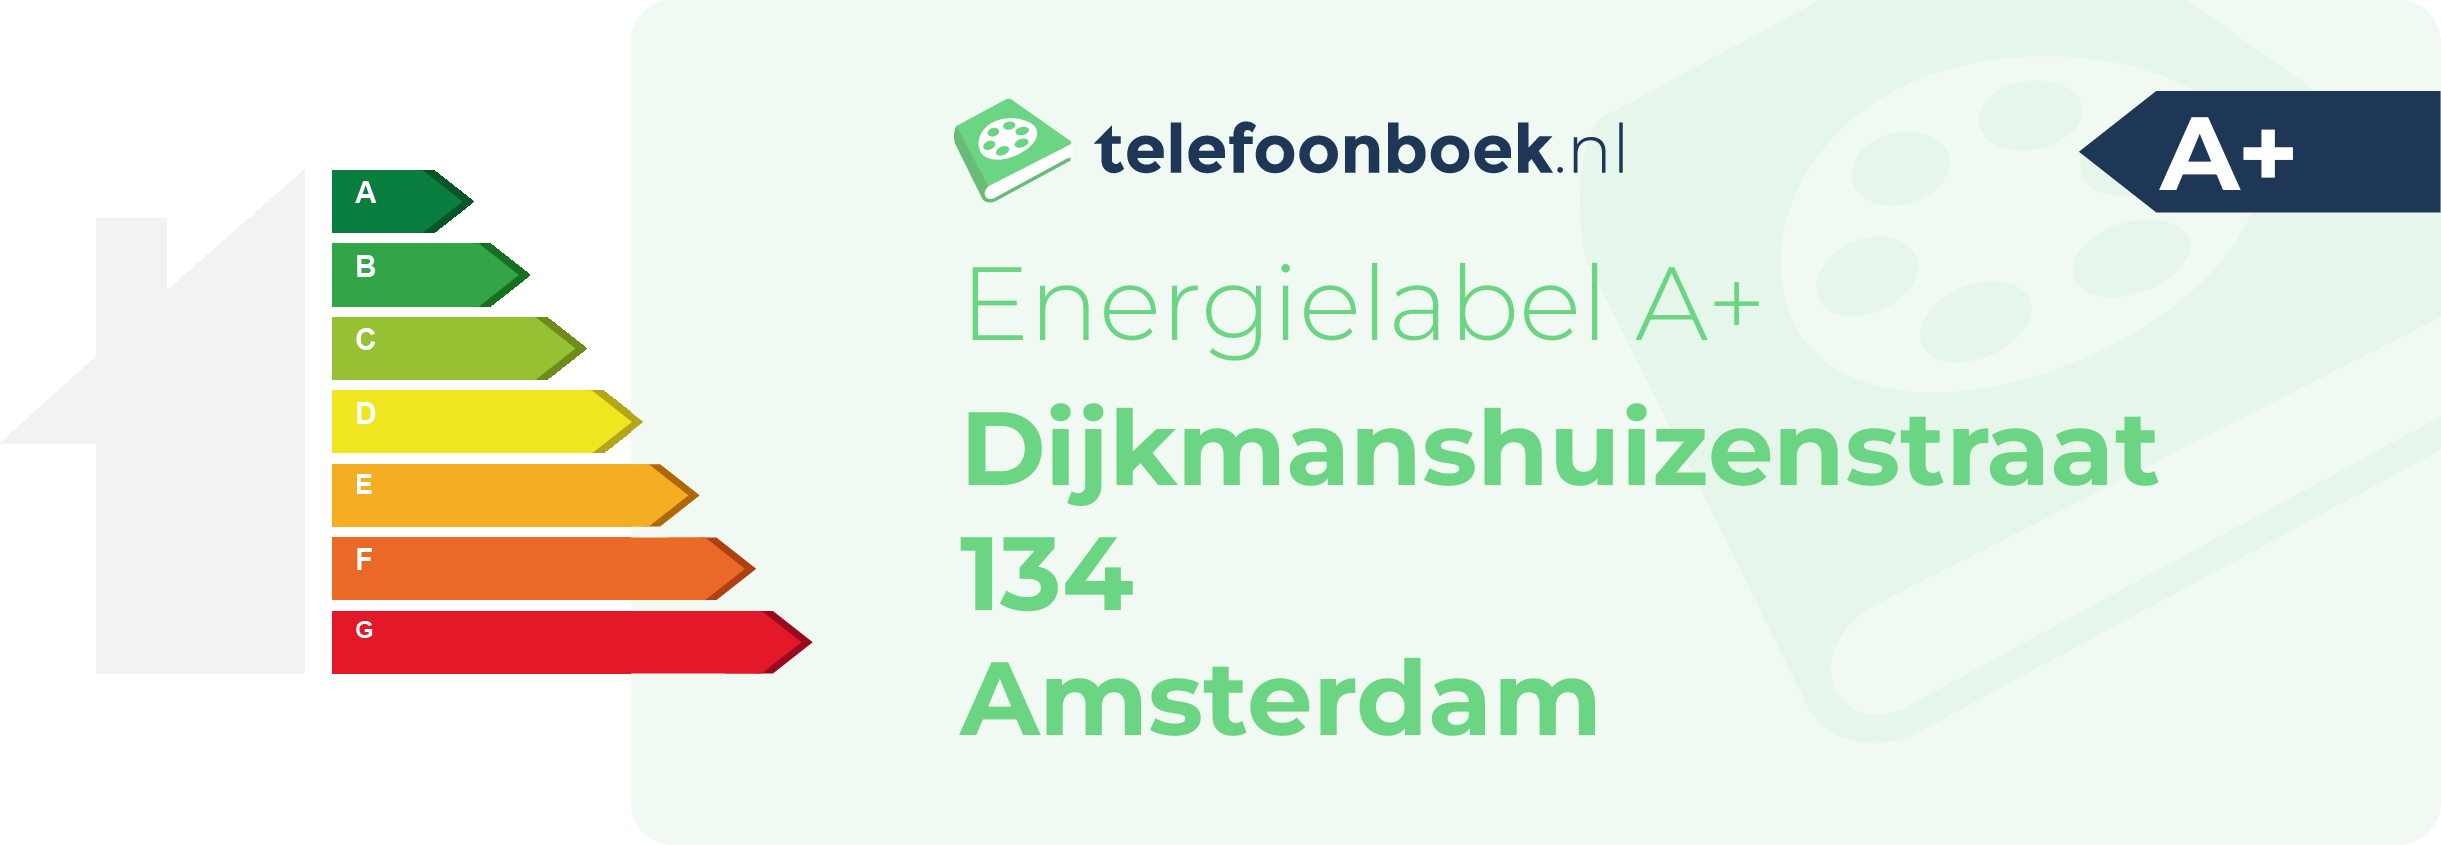 Energielabel Dijkmanshuizenstraat 134 Amsterdam